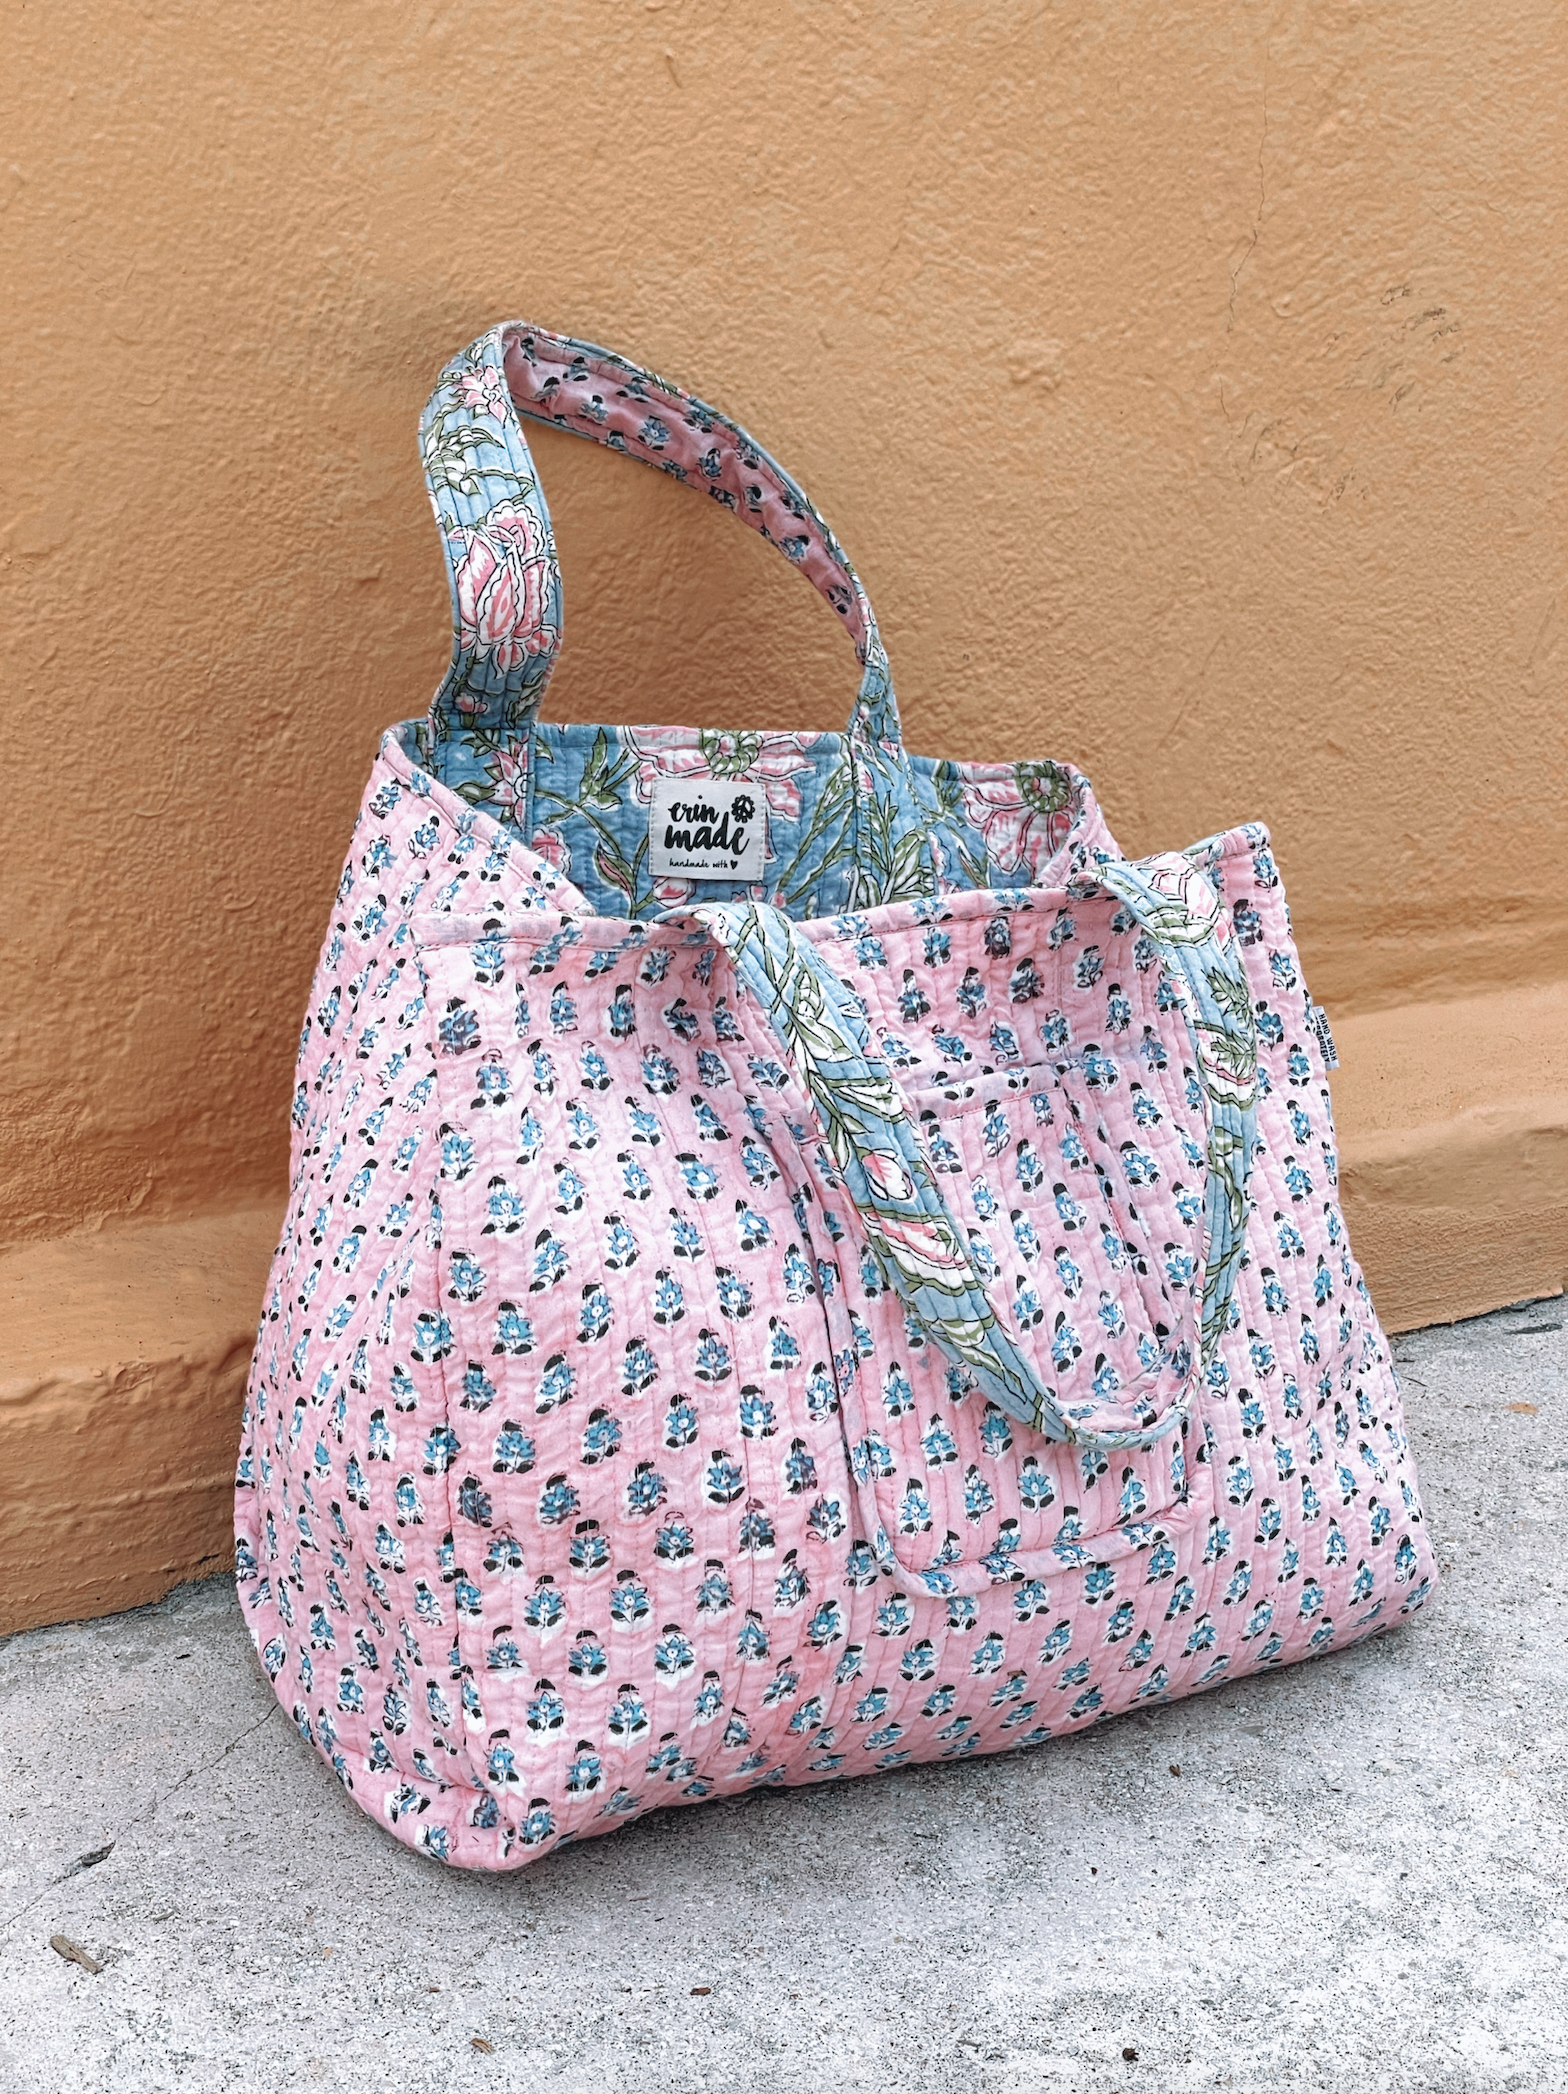 Emma - Structured Handbag